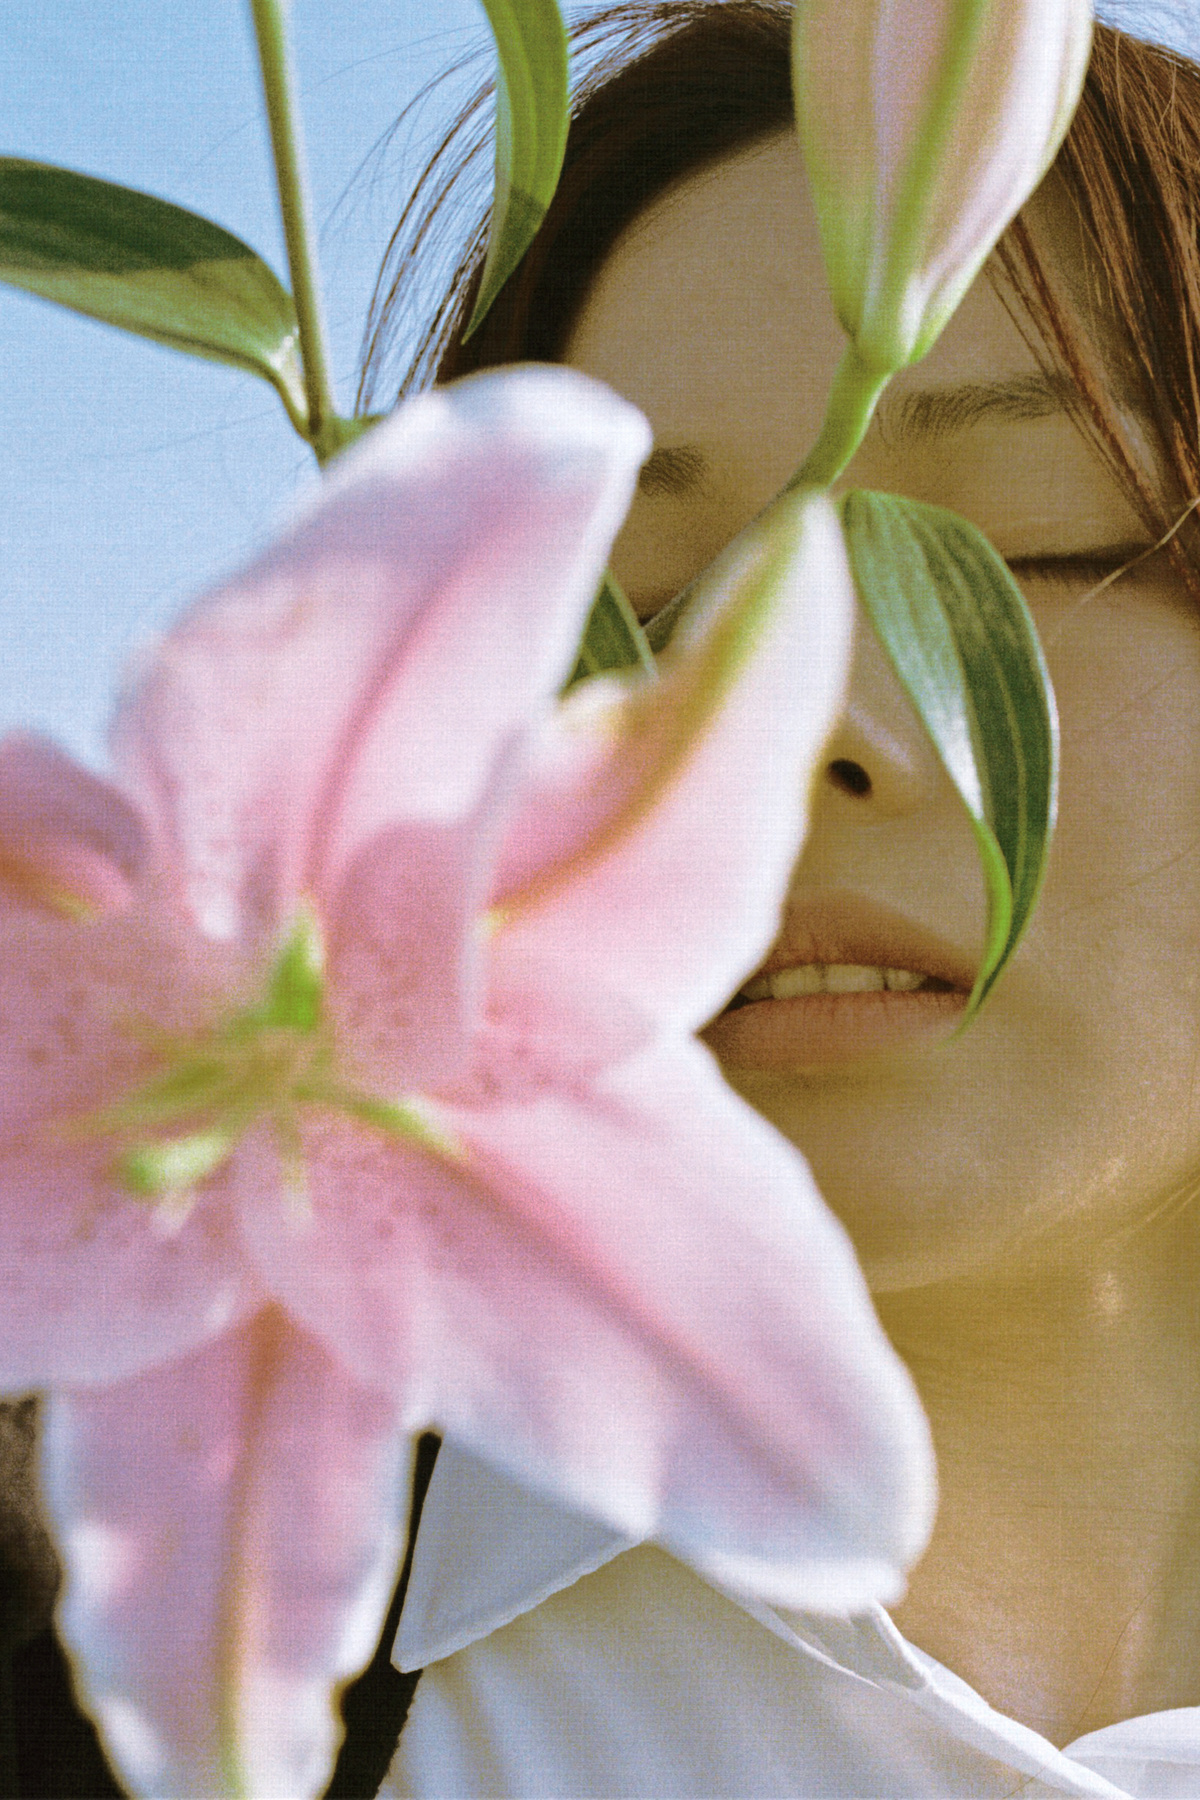 一位年轻女子举着一朵粉色花靠近她的脸